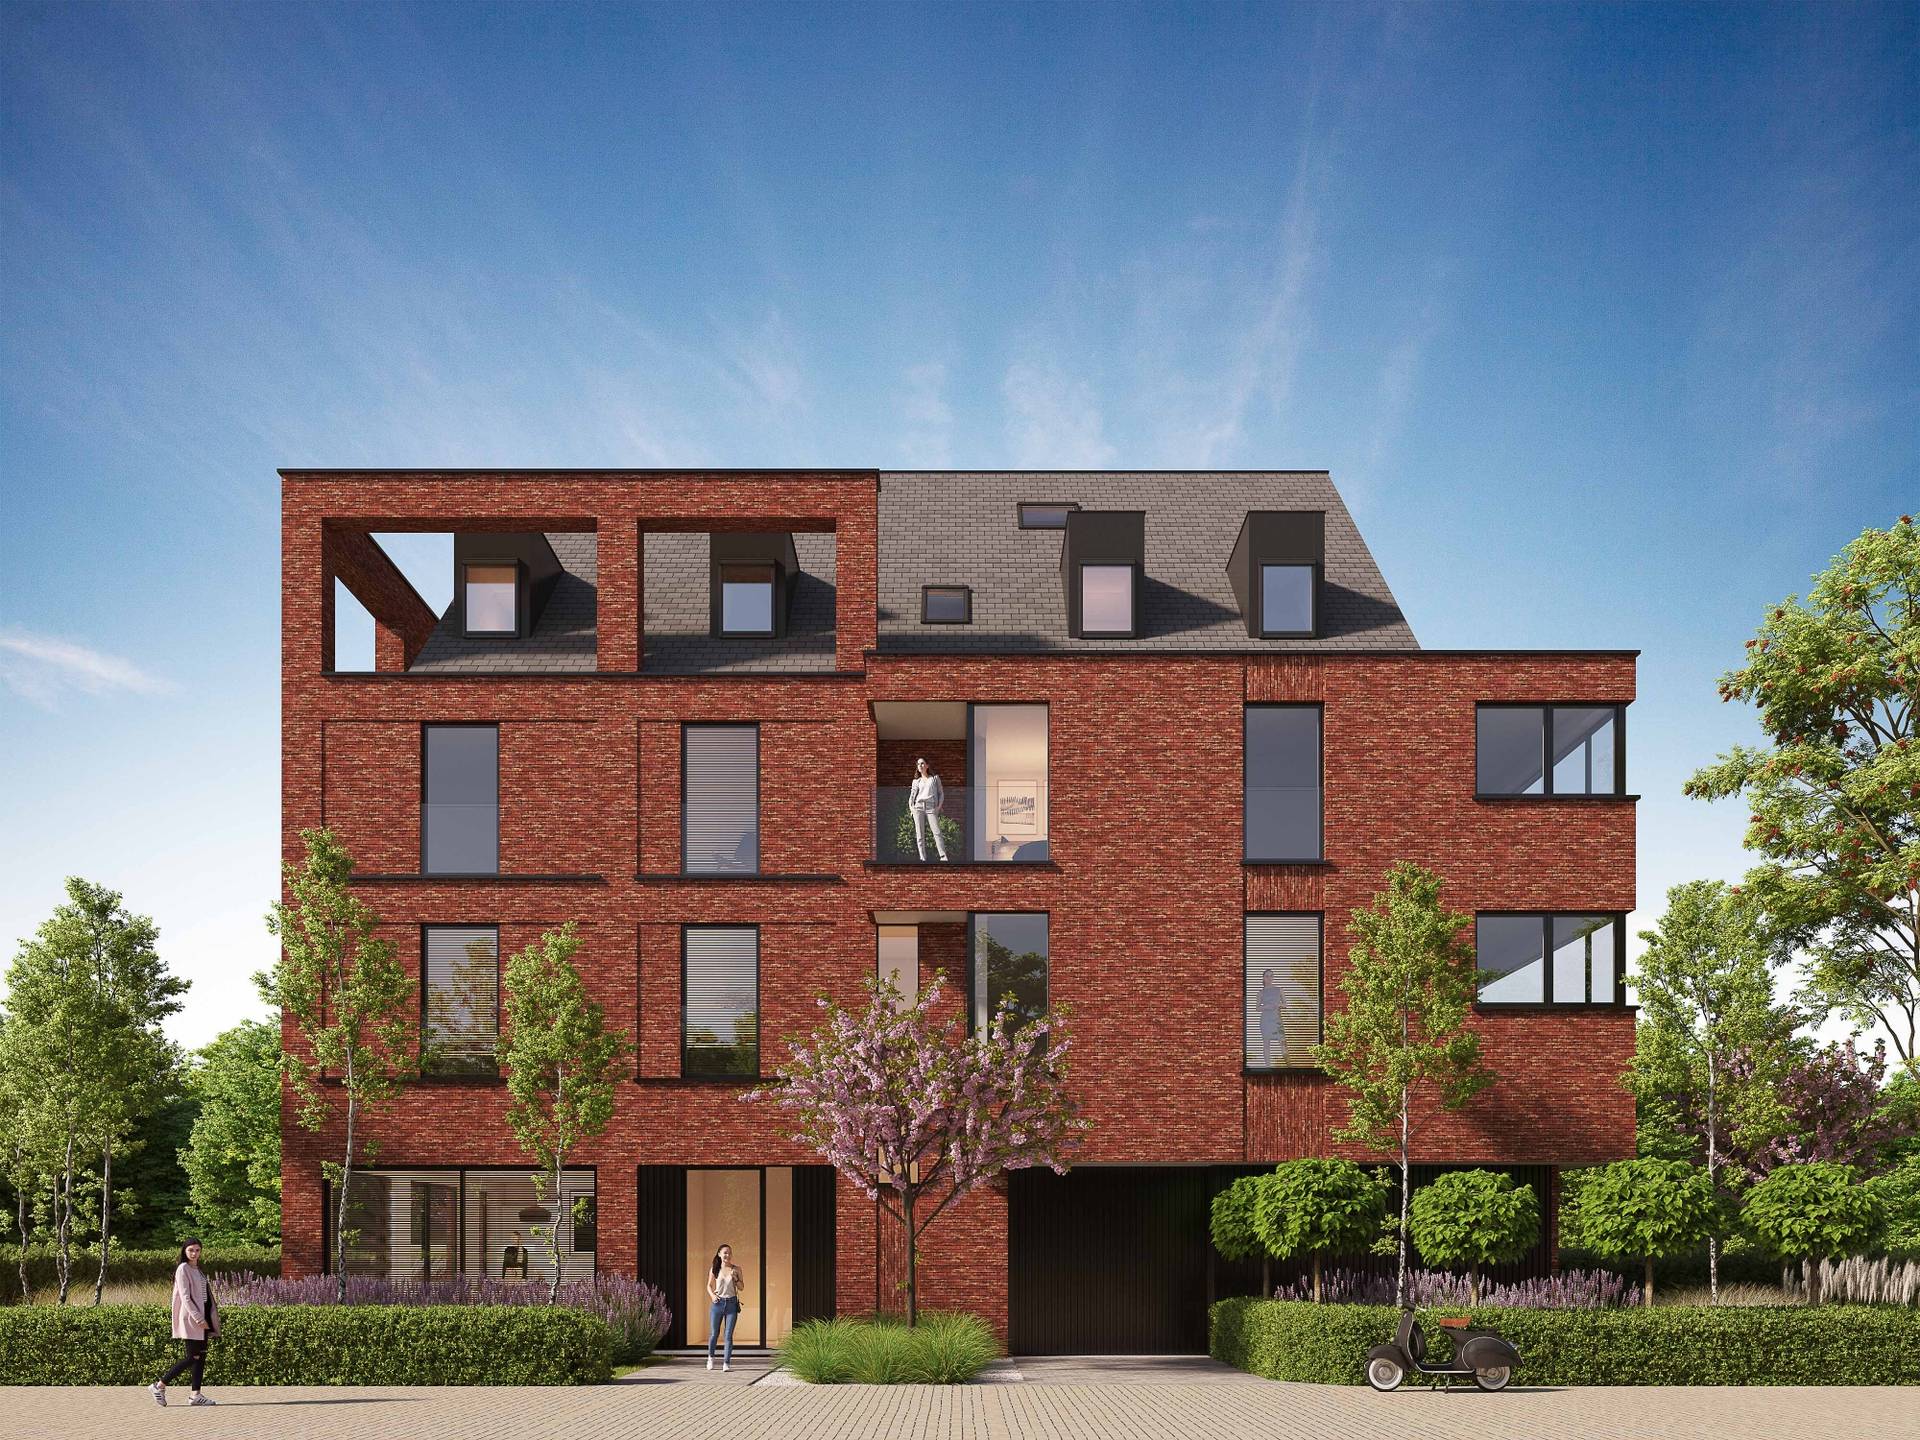 VERKOOP  Appartement 2 SLPK Knokke-Heist - Nieuwbouwconstructie 